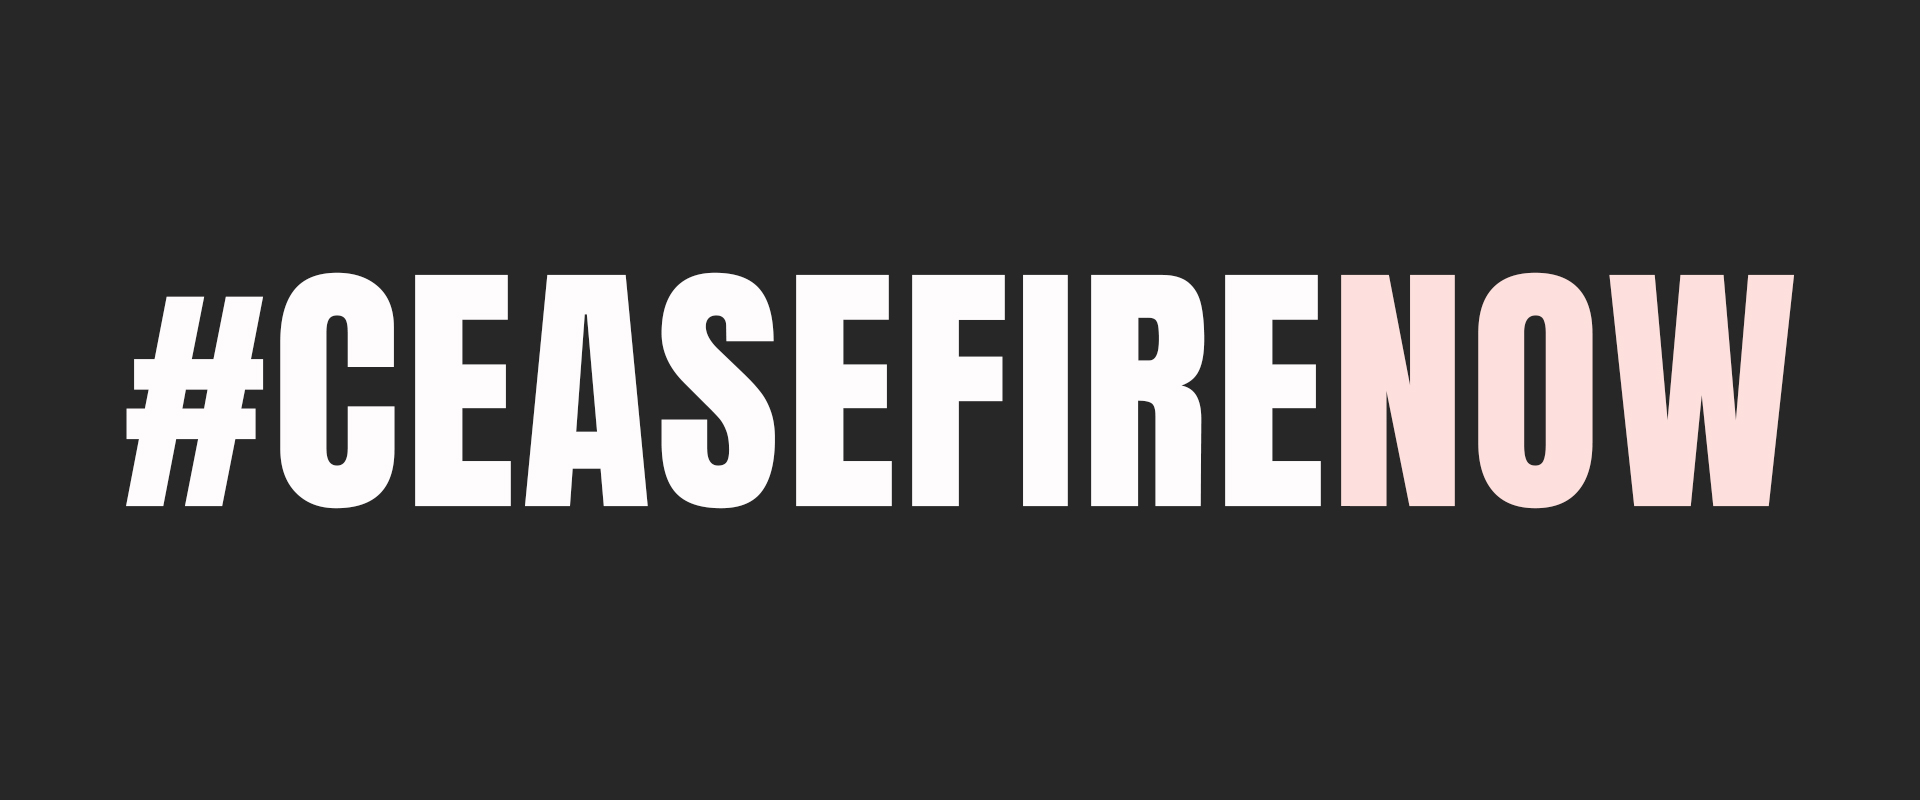 #CeasefireNow